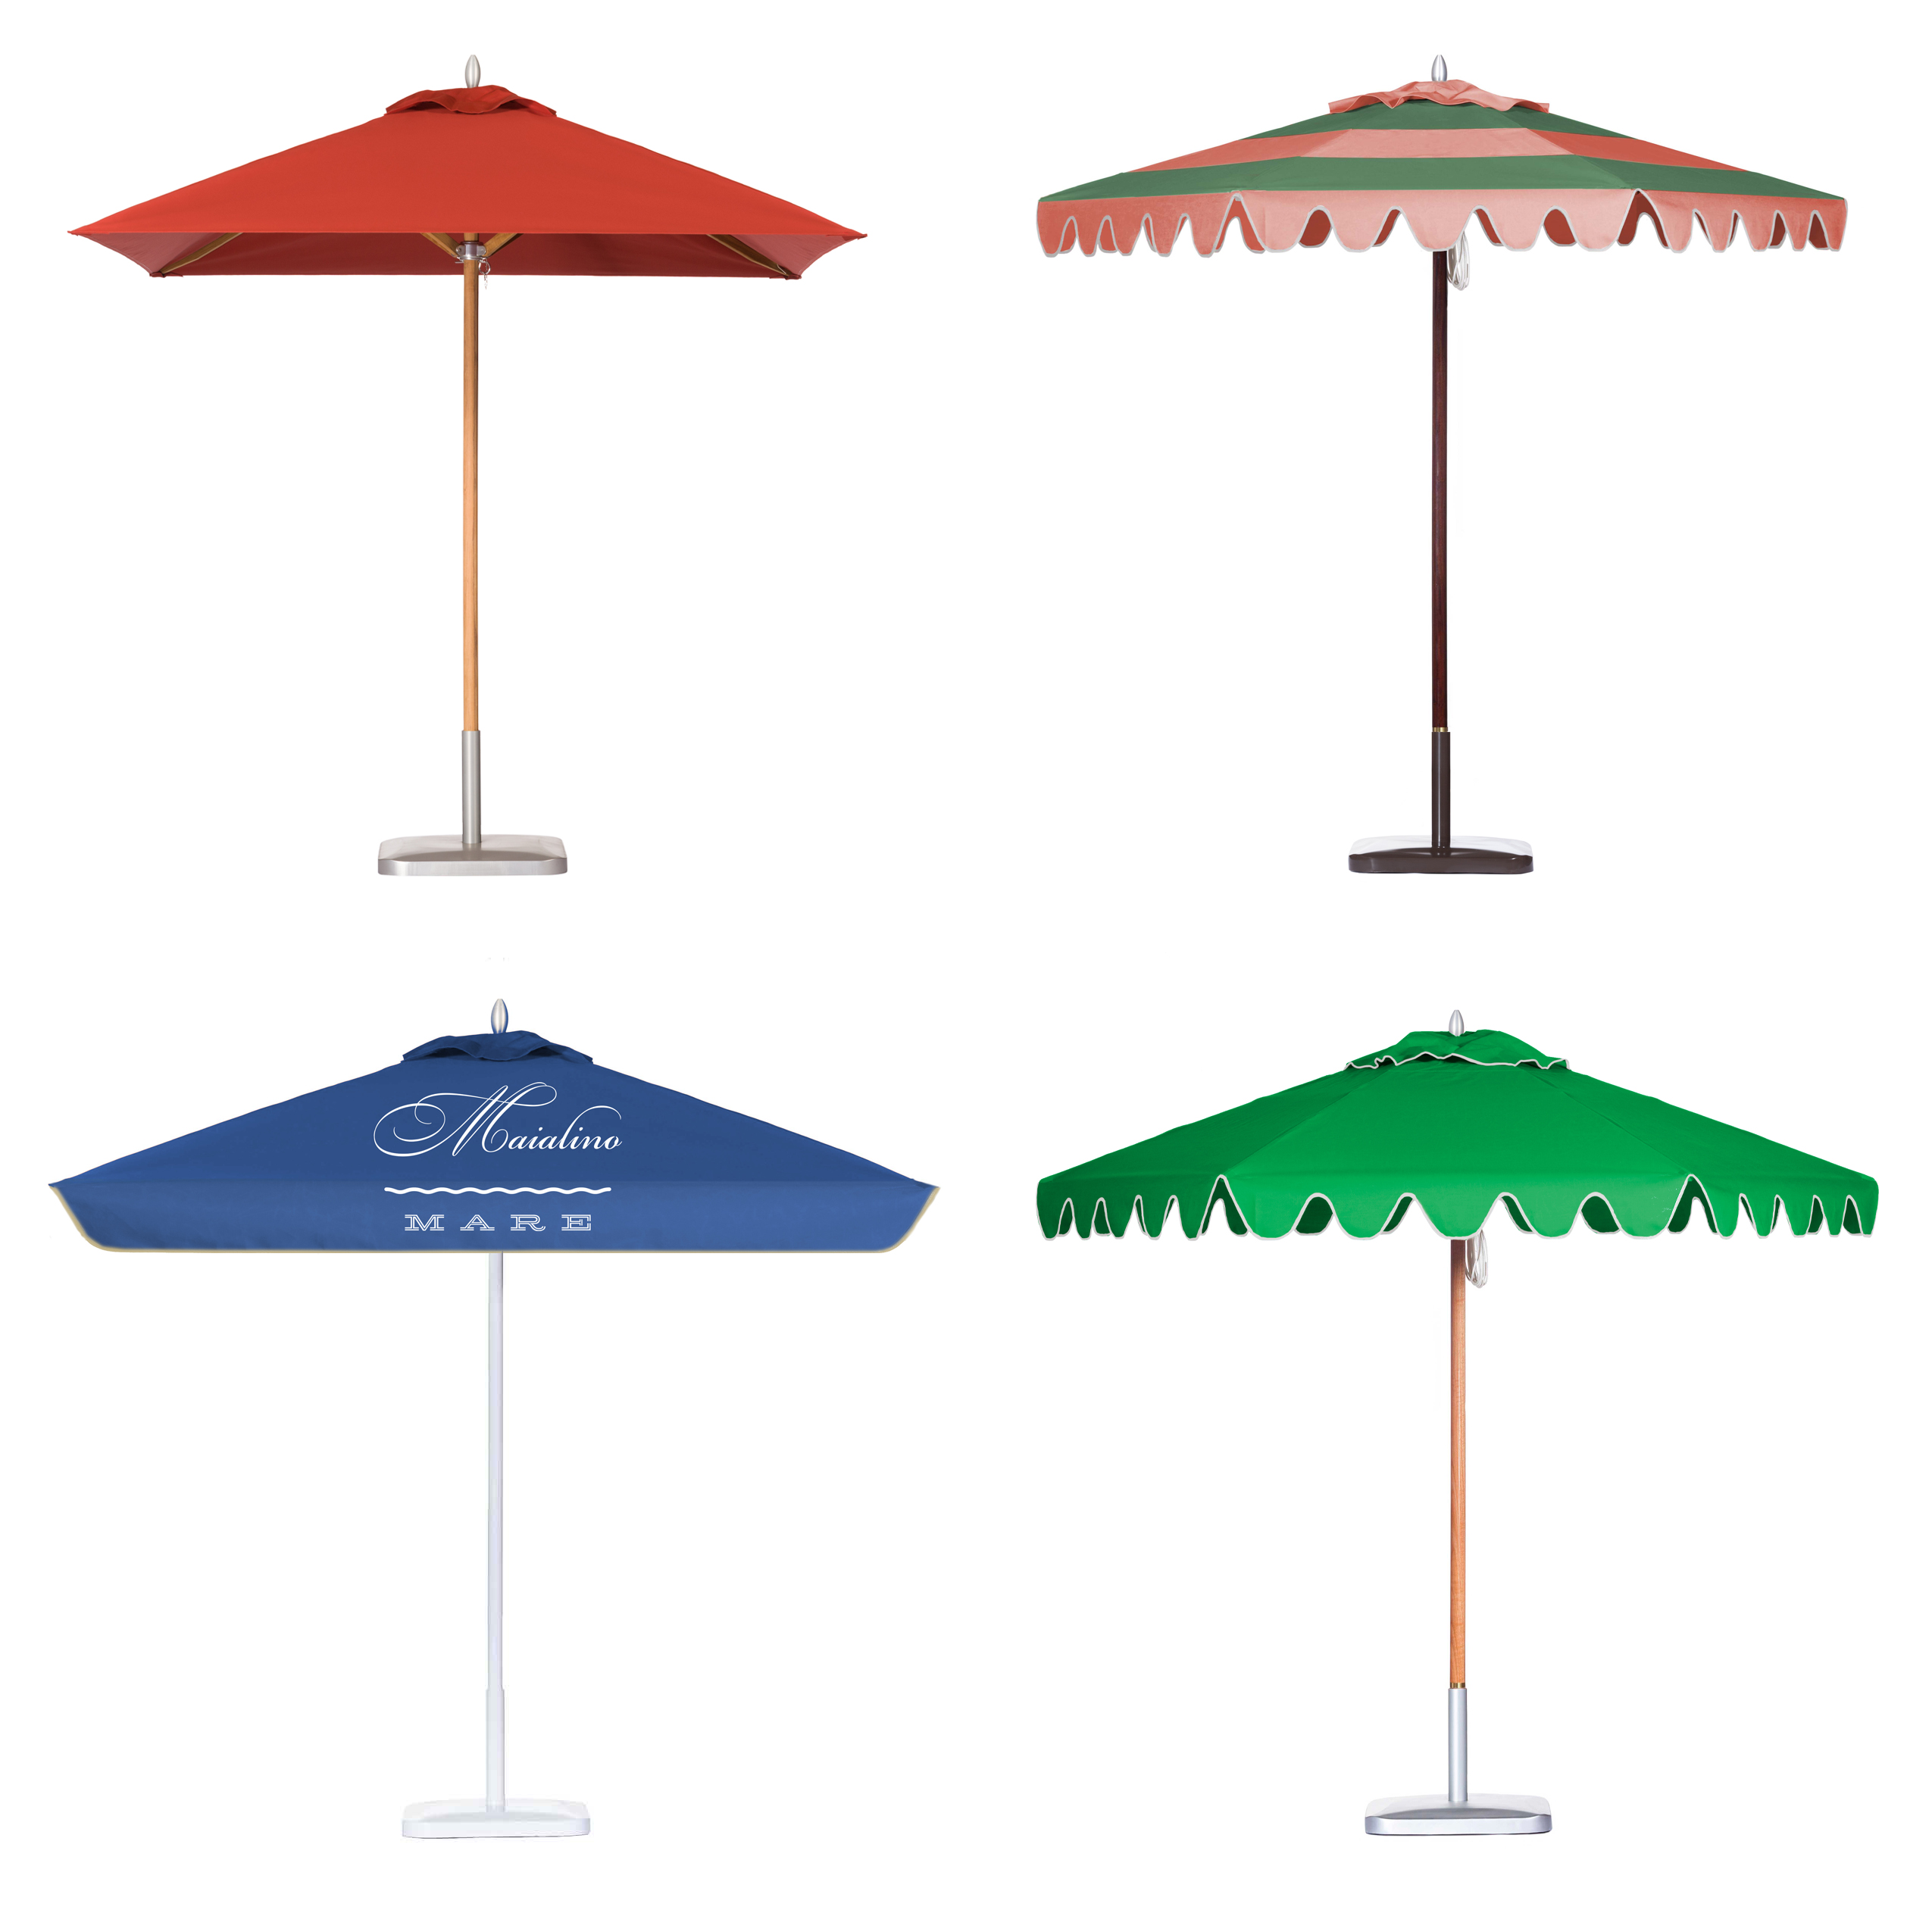 Image of four Montecito umbrellas